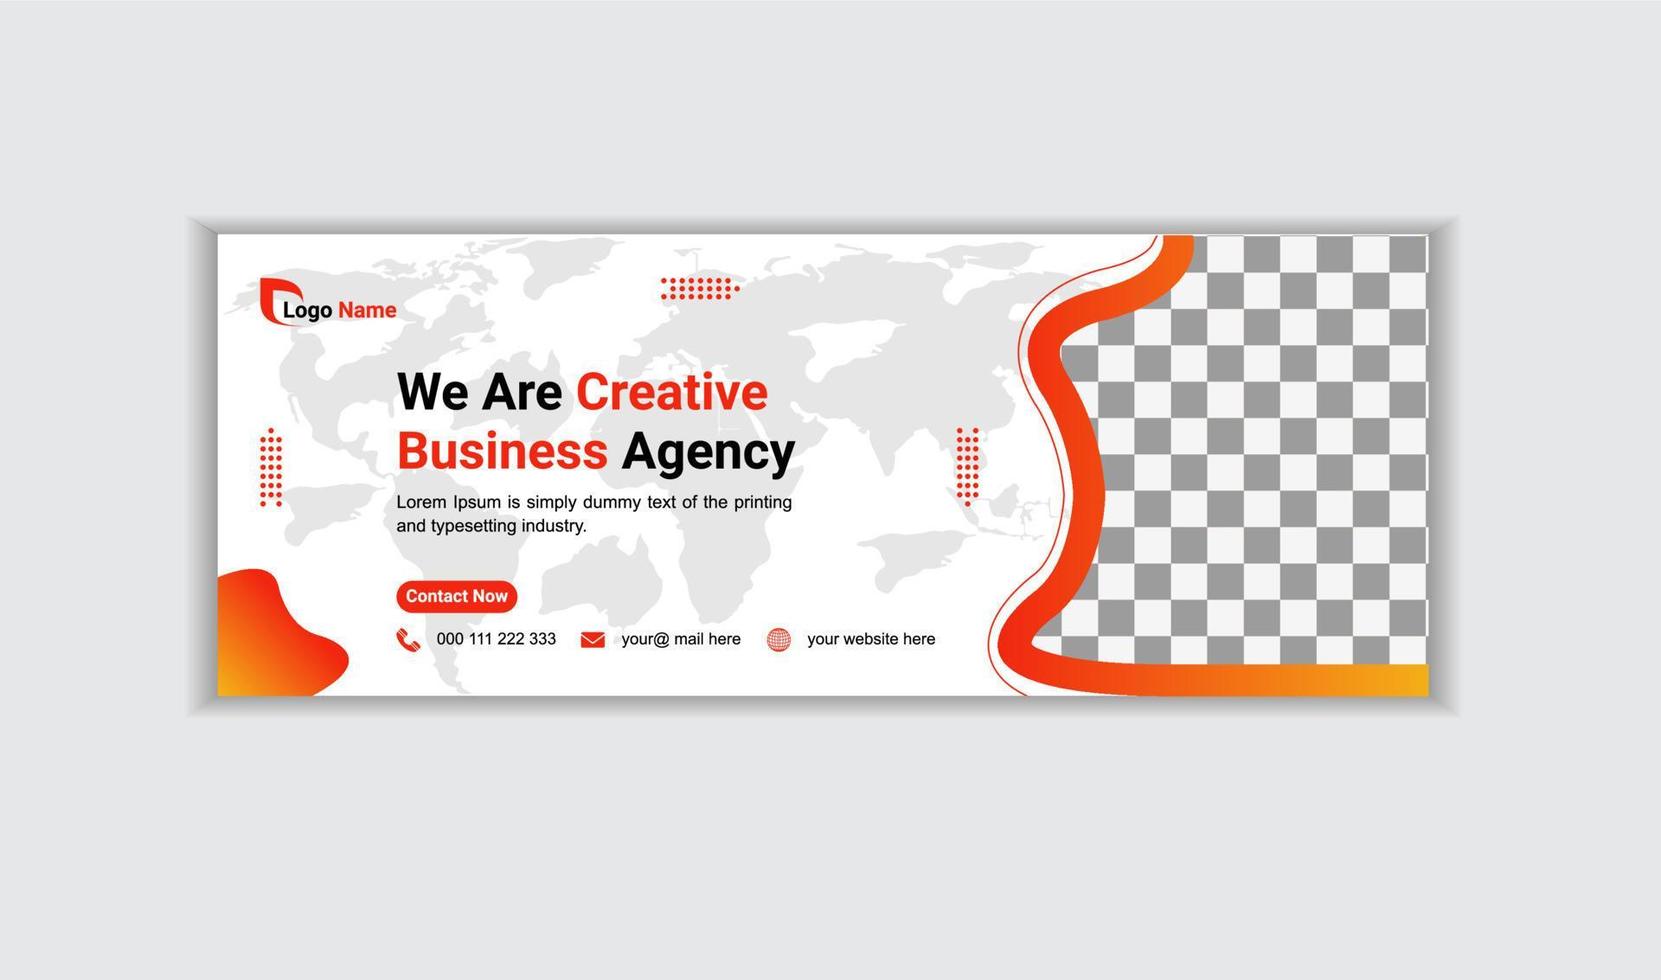 kreativa företagsföretag webbbanner design och målsida sociala medier omslag eller miniatyrbildsmall vektor